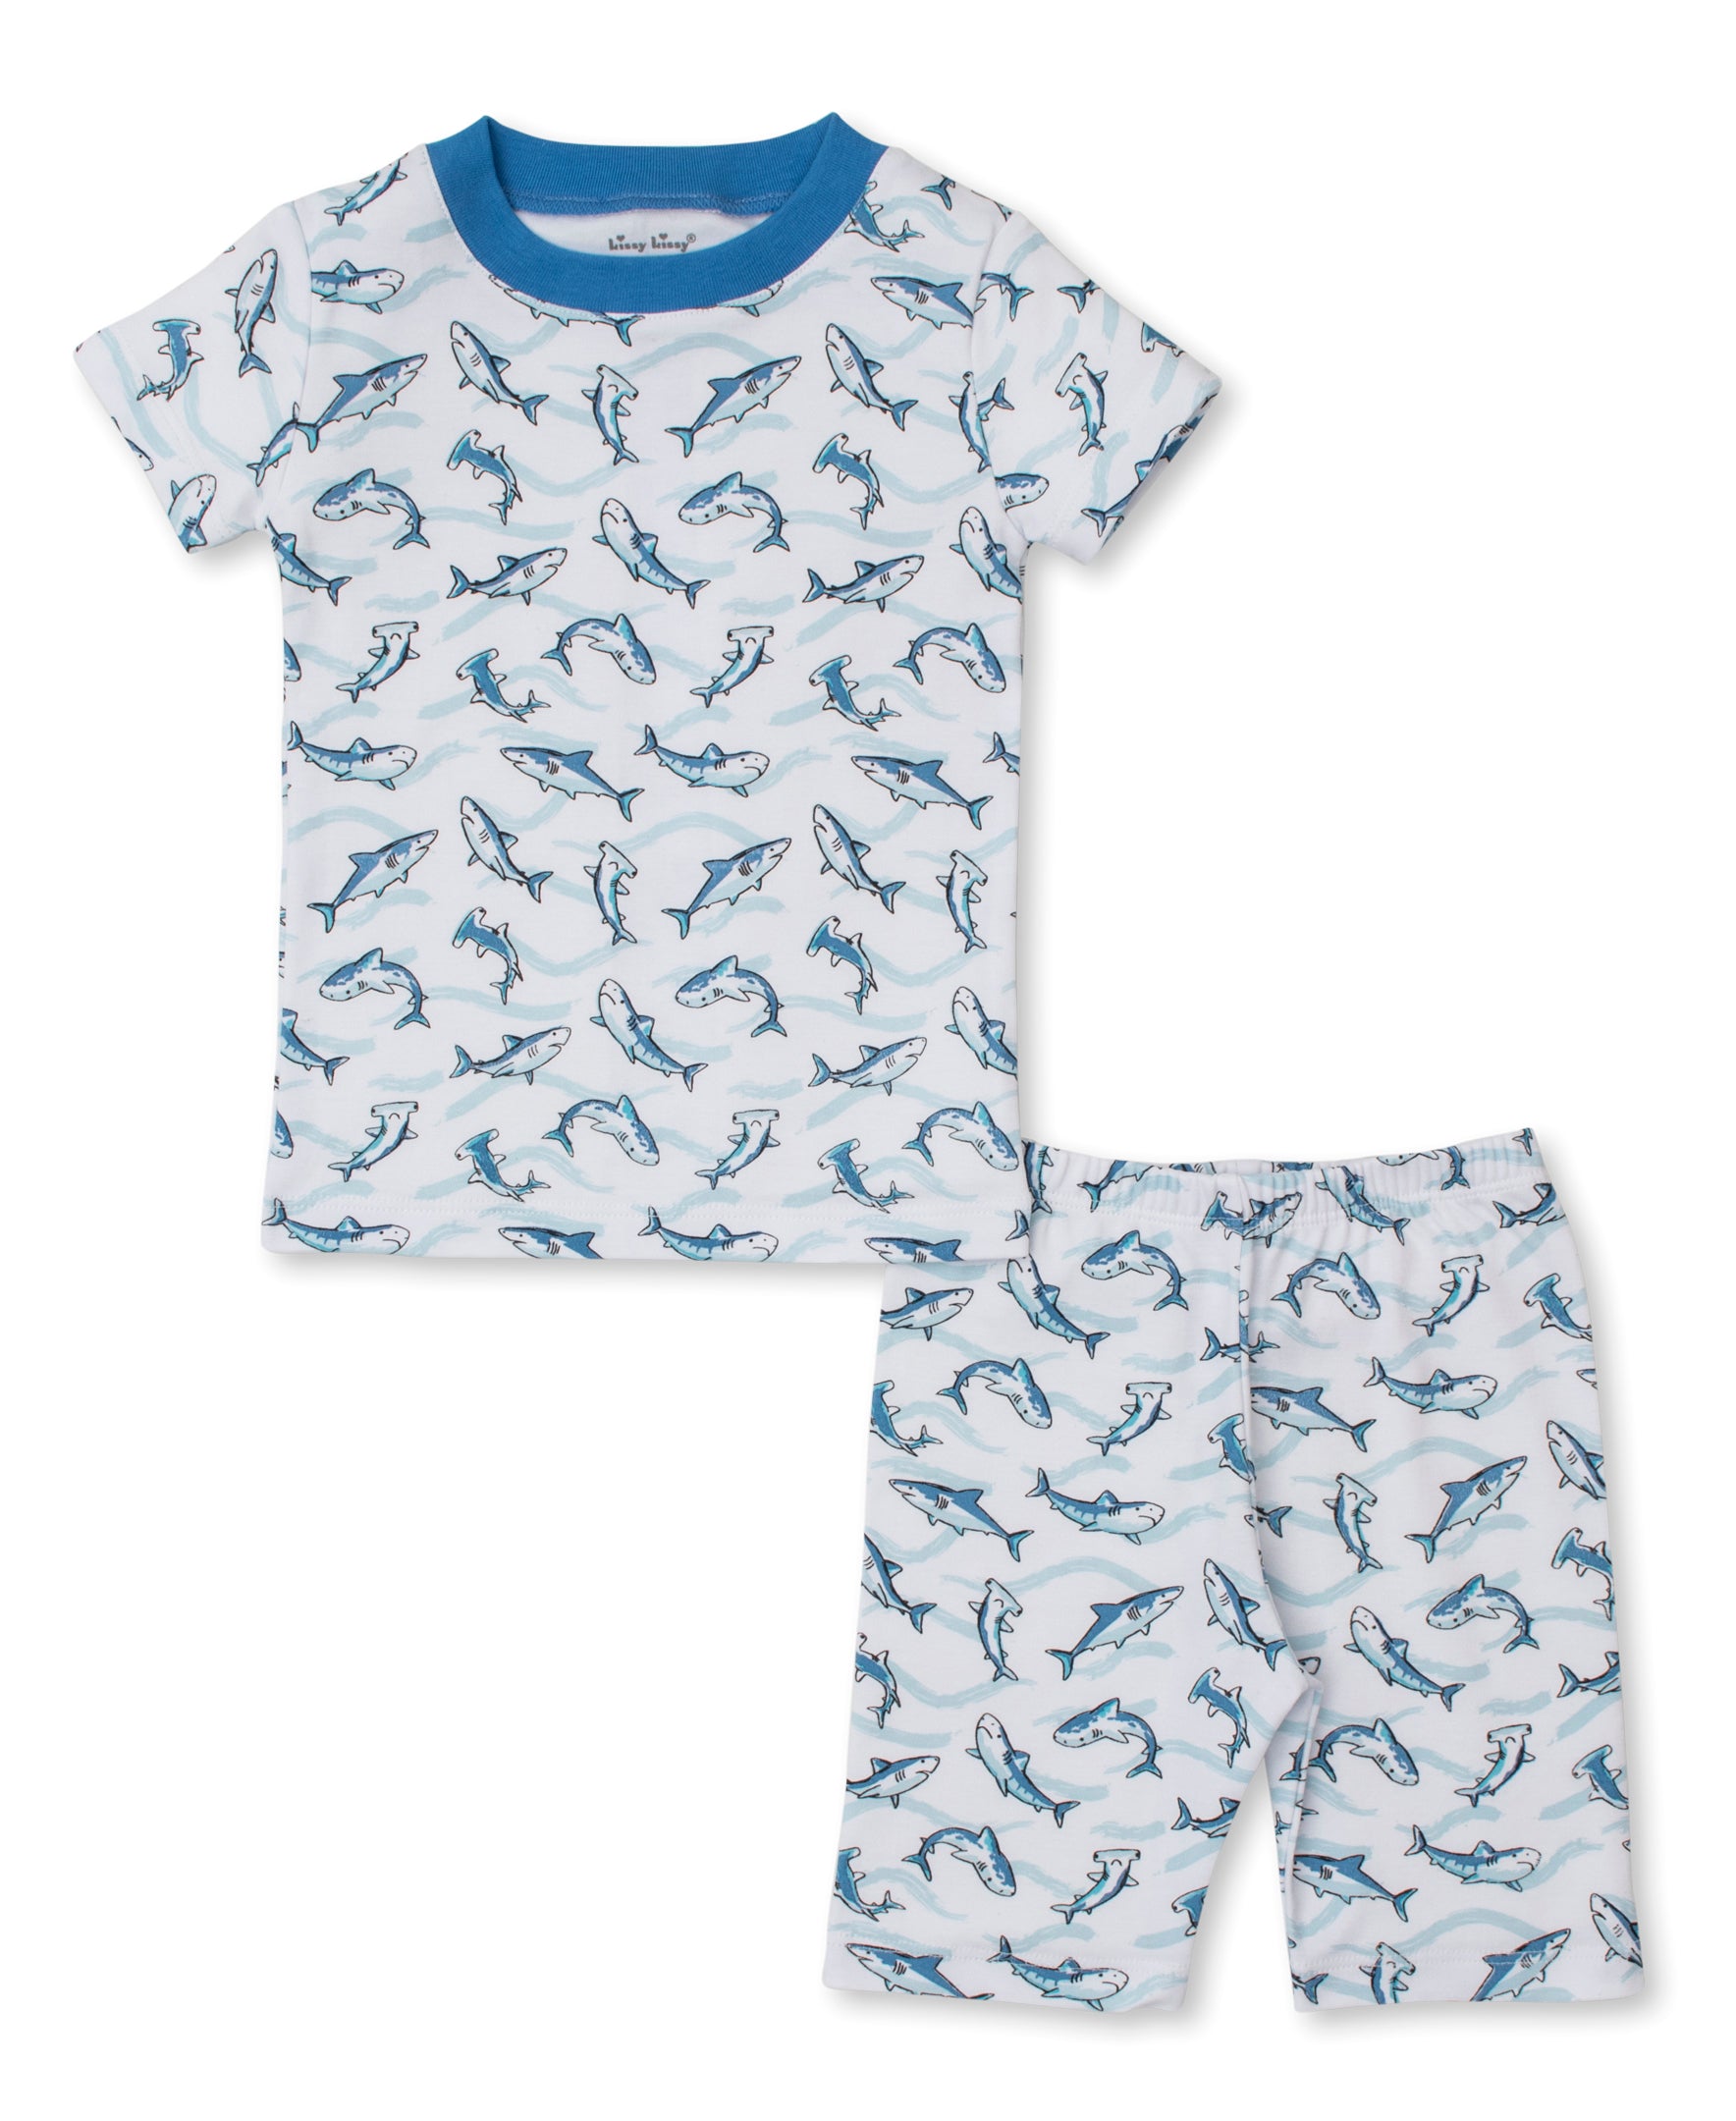 Swift Sharks Toddler Short Pajama Set - Kissy Kissy